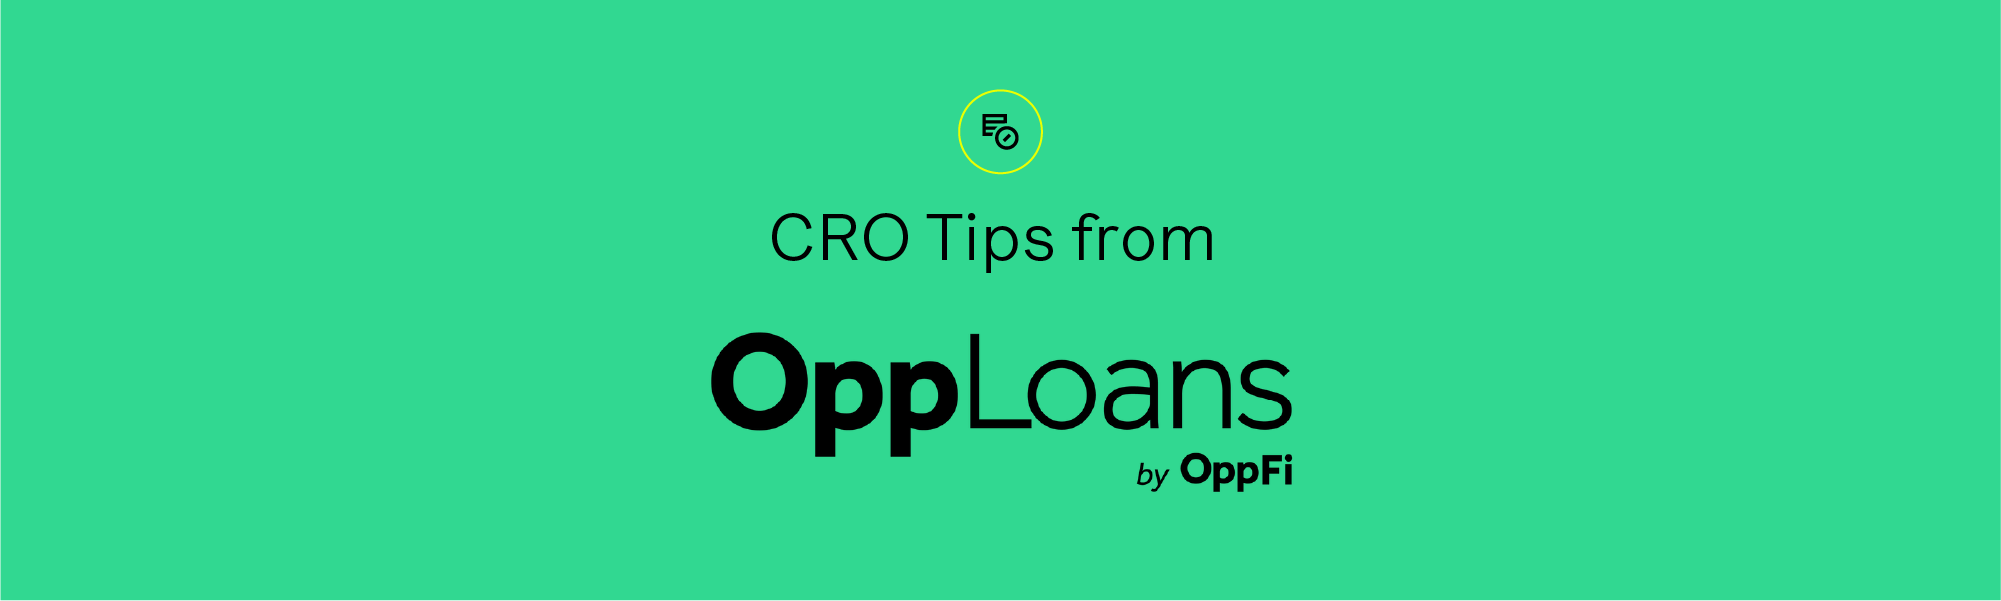 CRO Tips from OppLoans